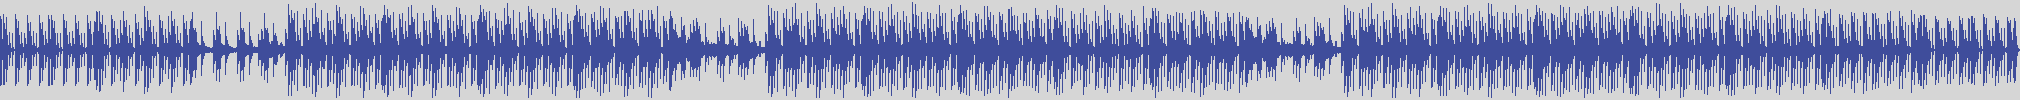 noclouds_chillout [NOC099] Mitchell Collins - Image Line [Da Jazz Trumpet Mix] audio wave form